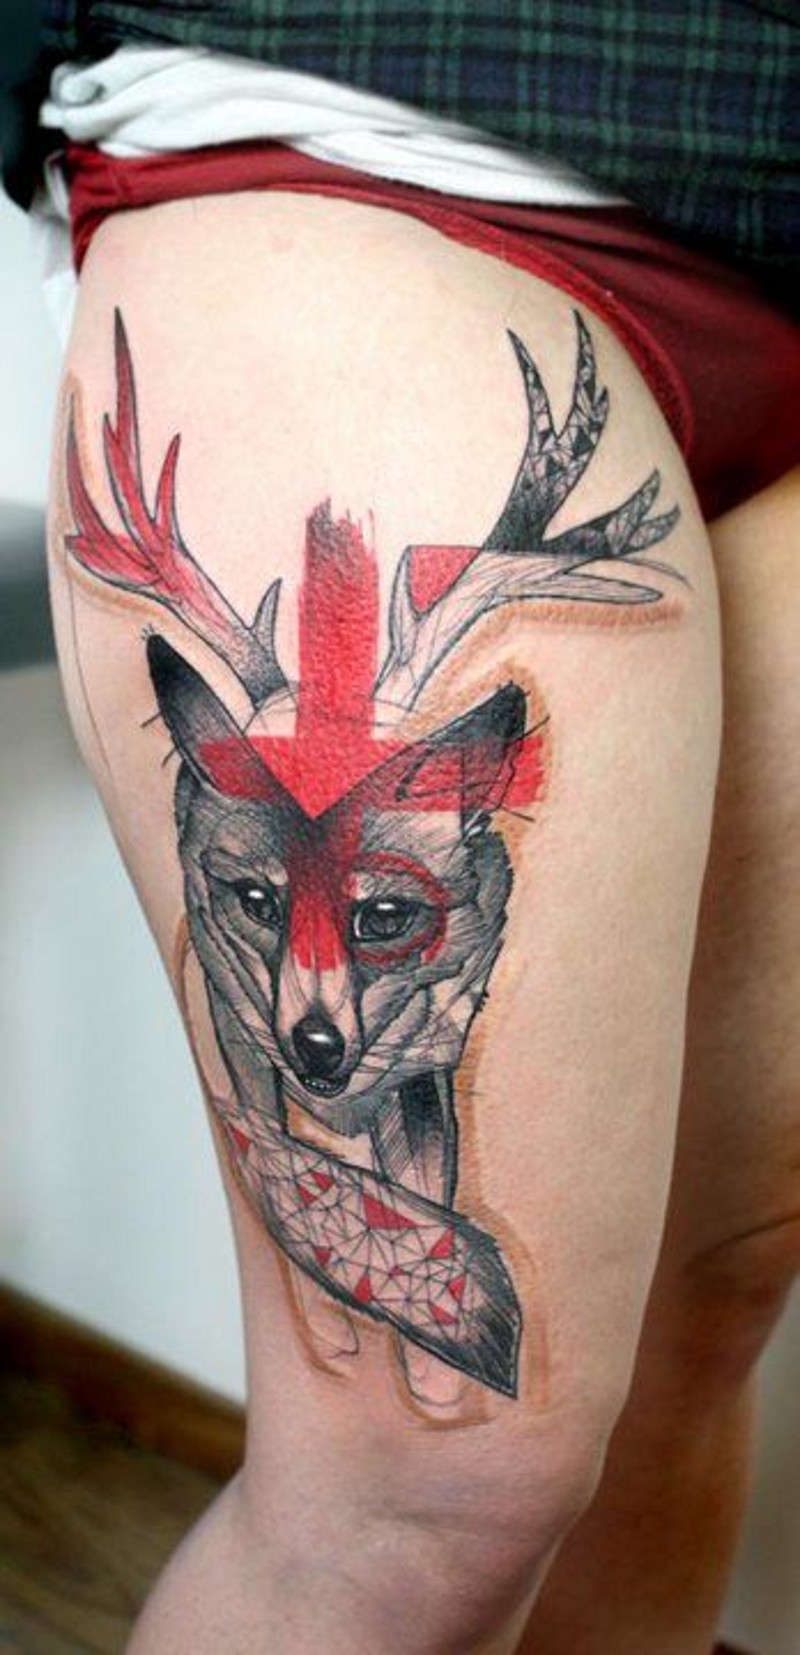 女性腿部彩绘半色狐狸纹身图案